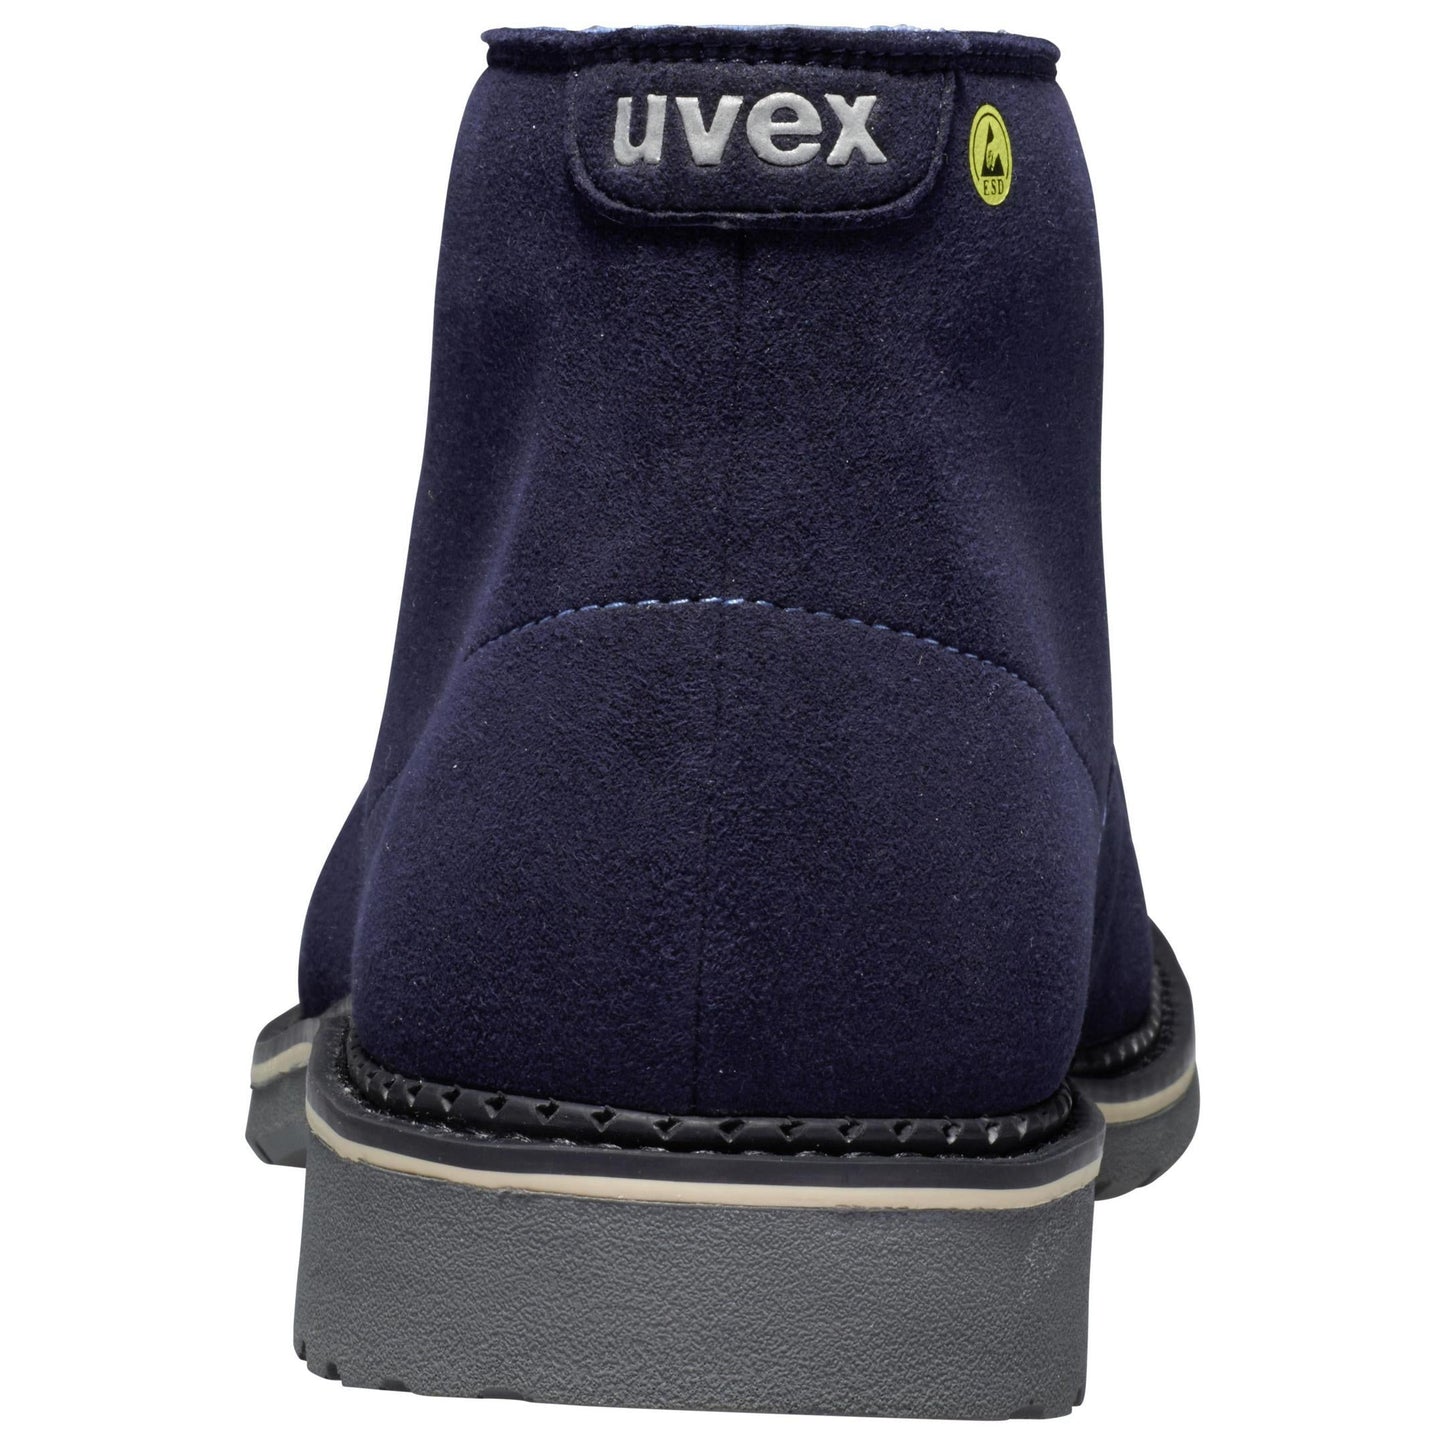 stylisch, super bequem- uvex 1 business Sicherheitsschuh S3 Stiefel Weite 11 Material